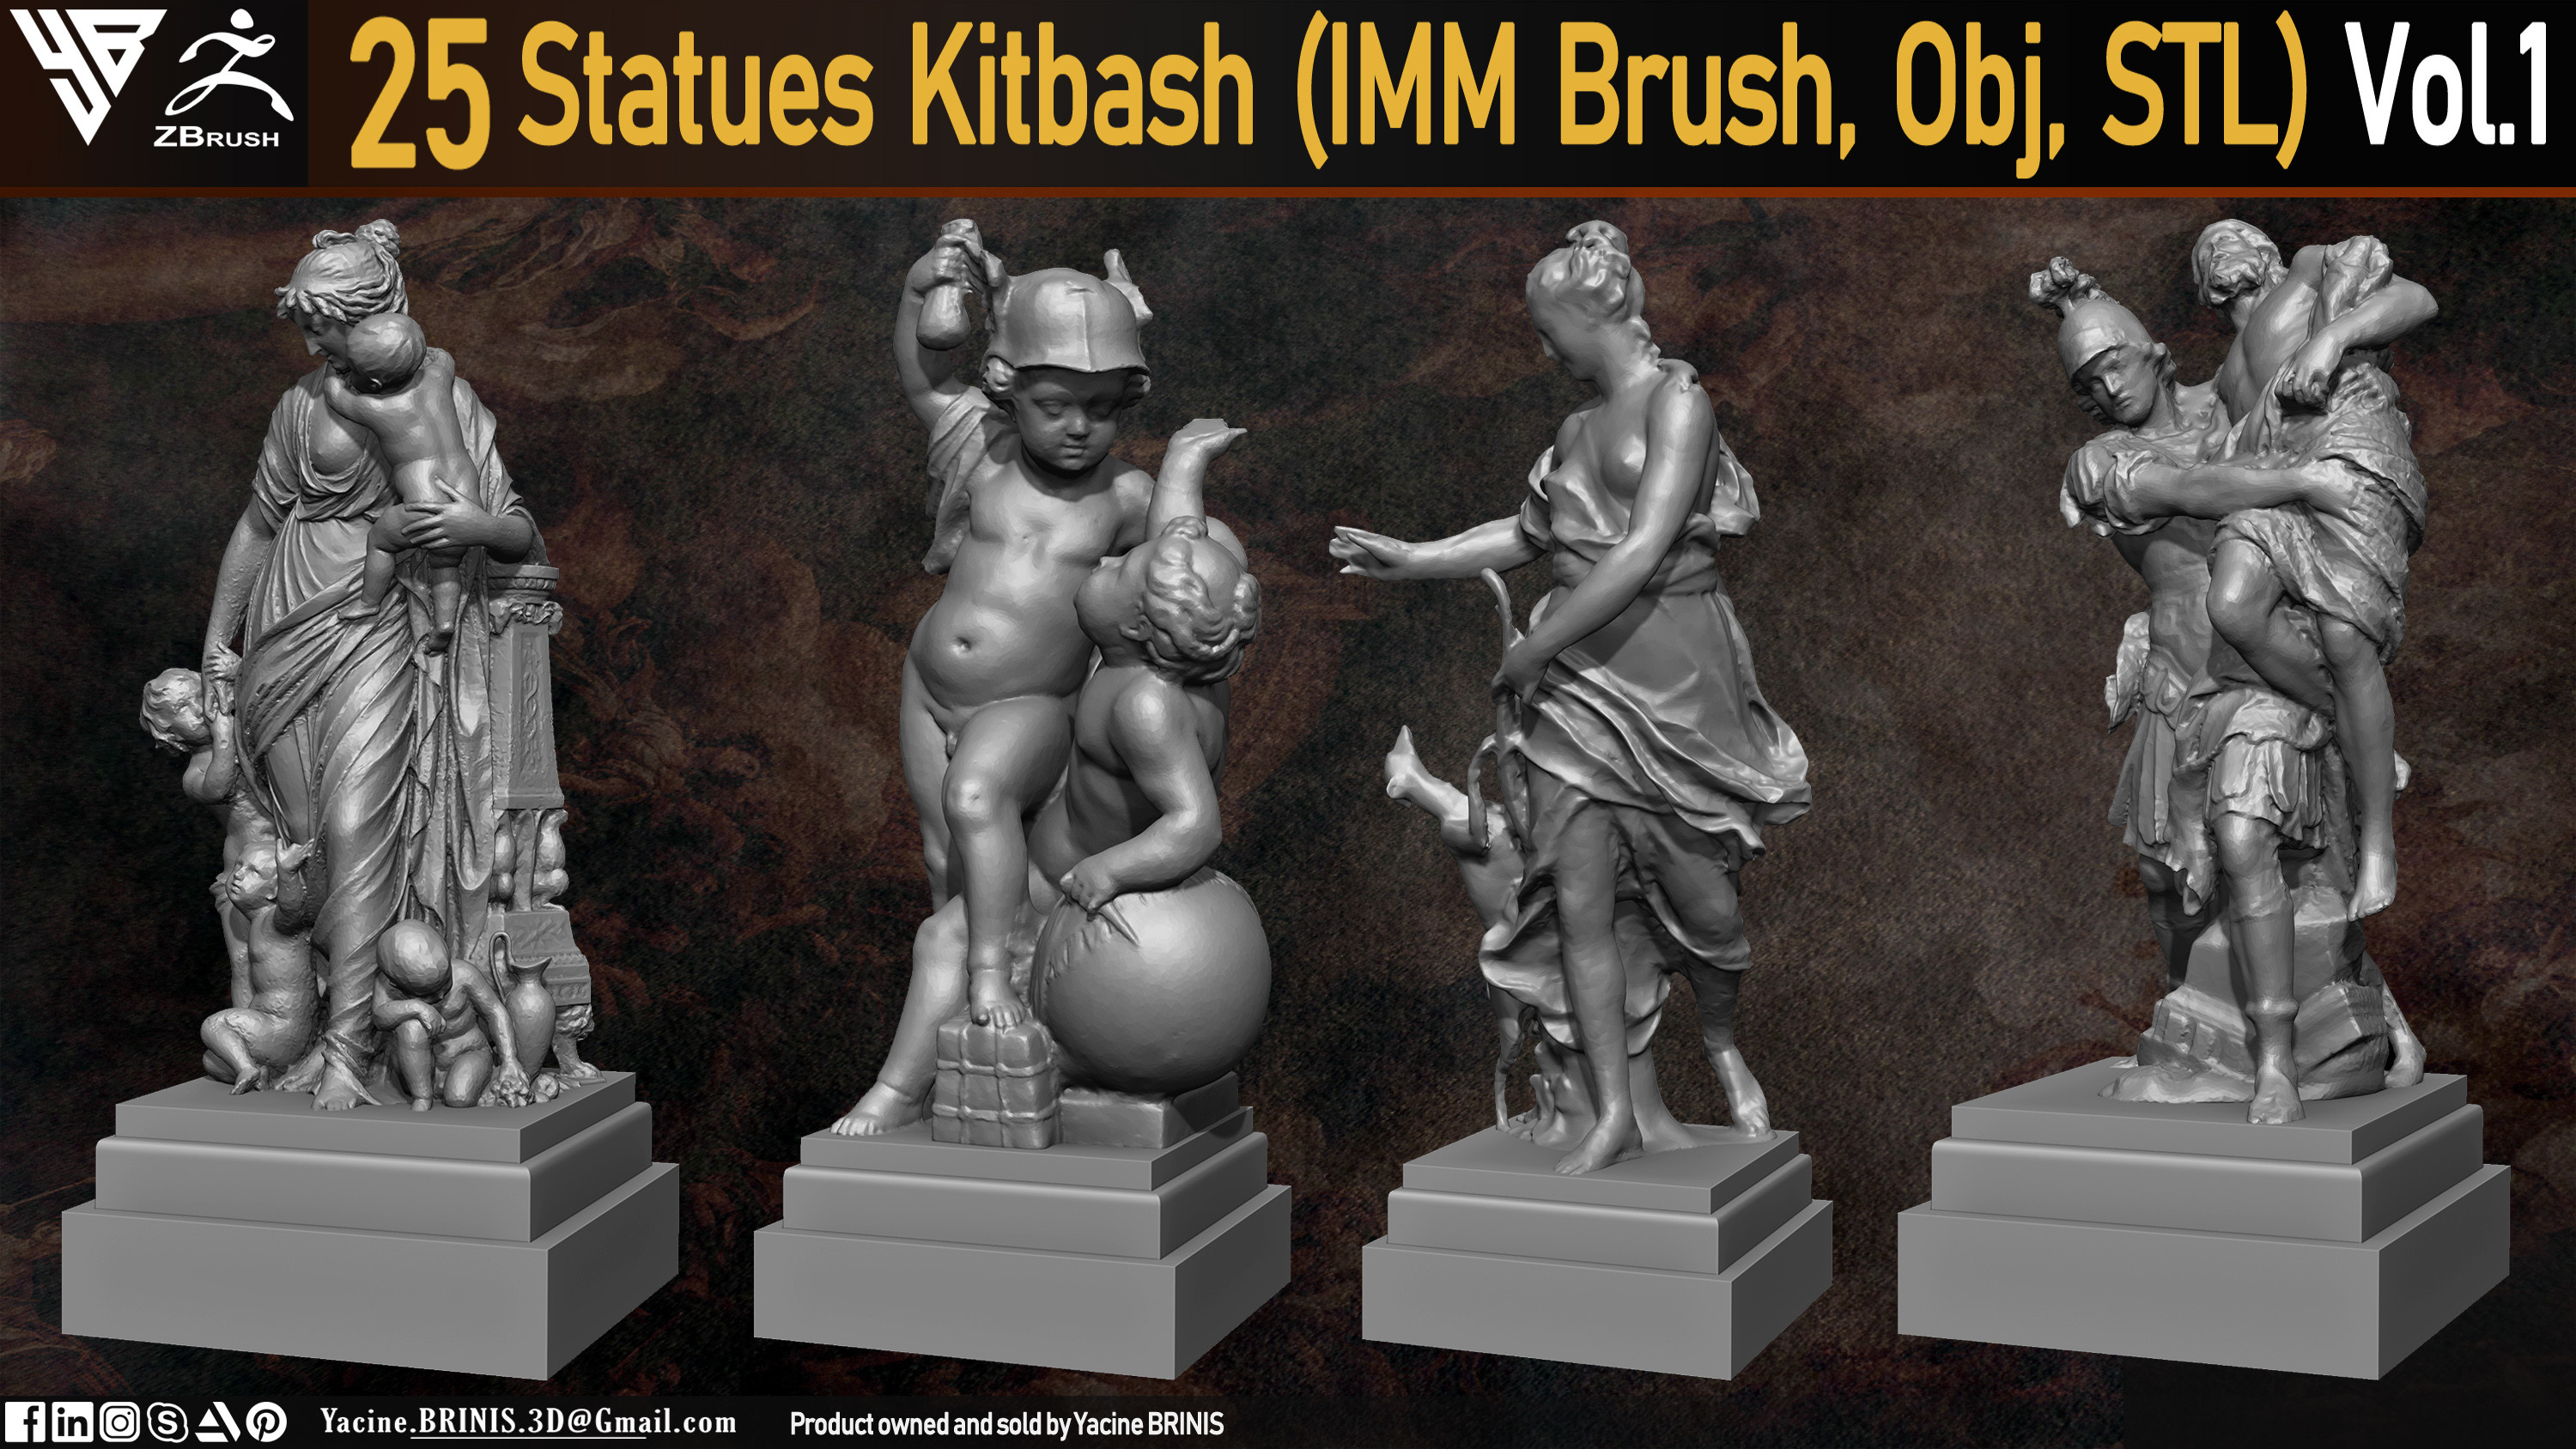 Statues Kitbash by yacine brinis Set 03